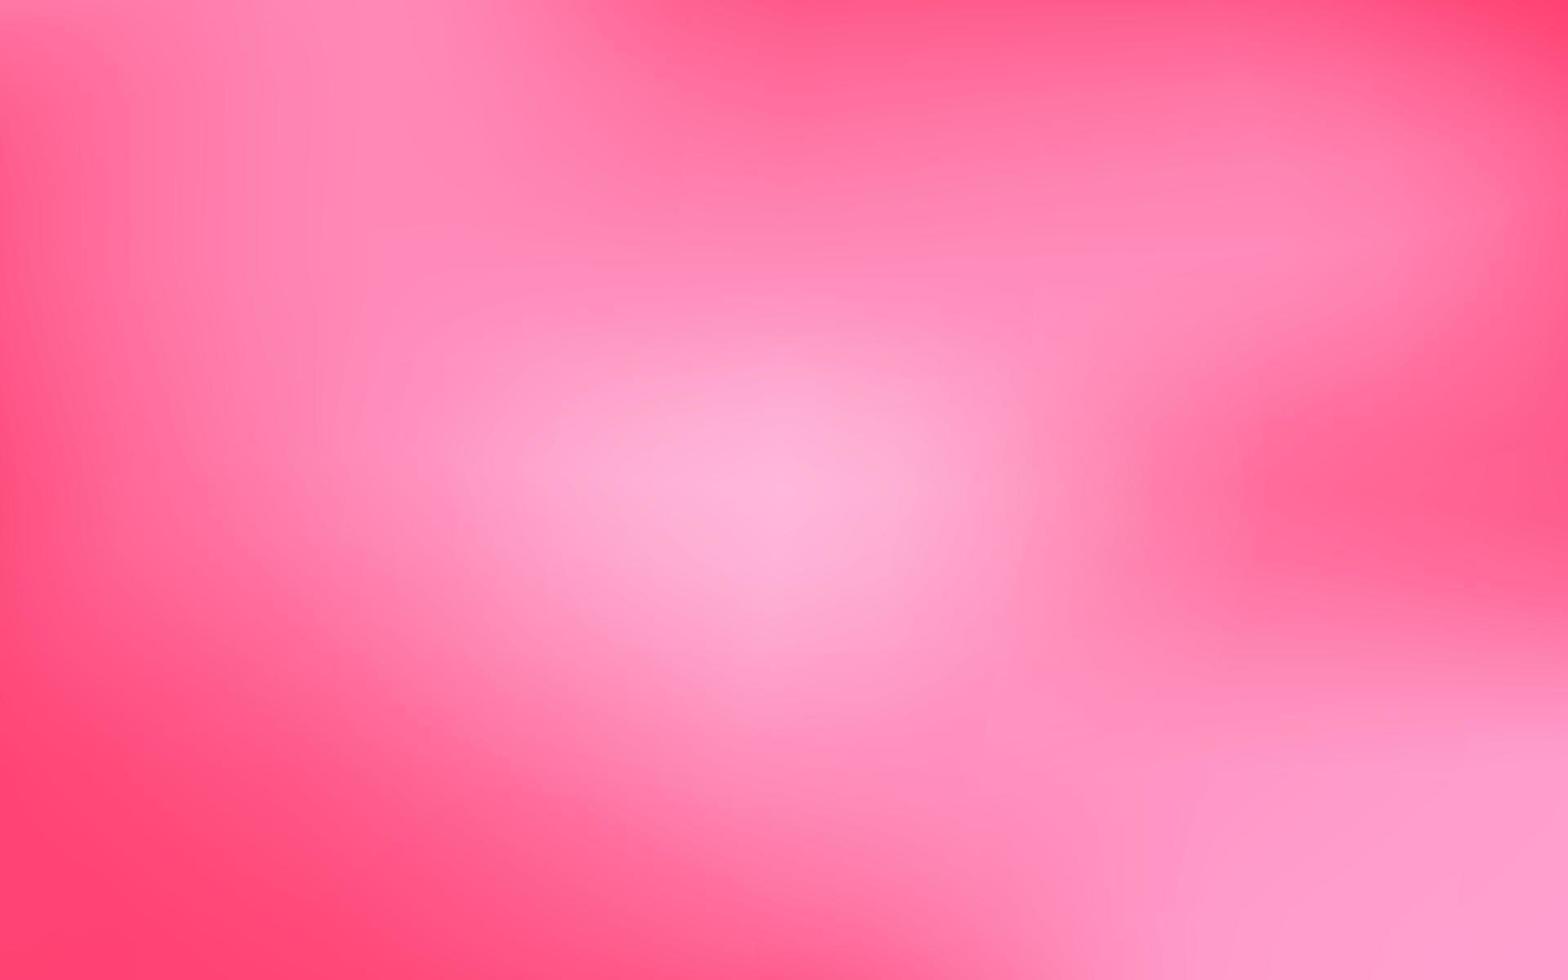 Pink gradient backgrounds. vector